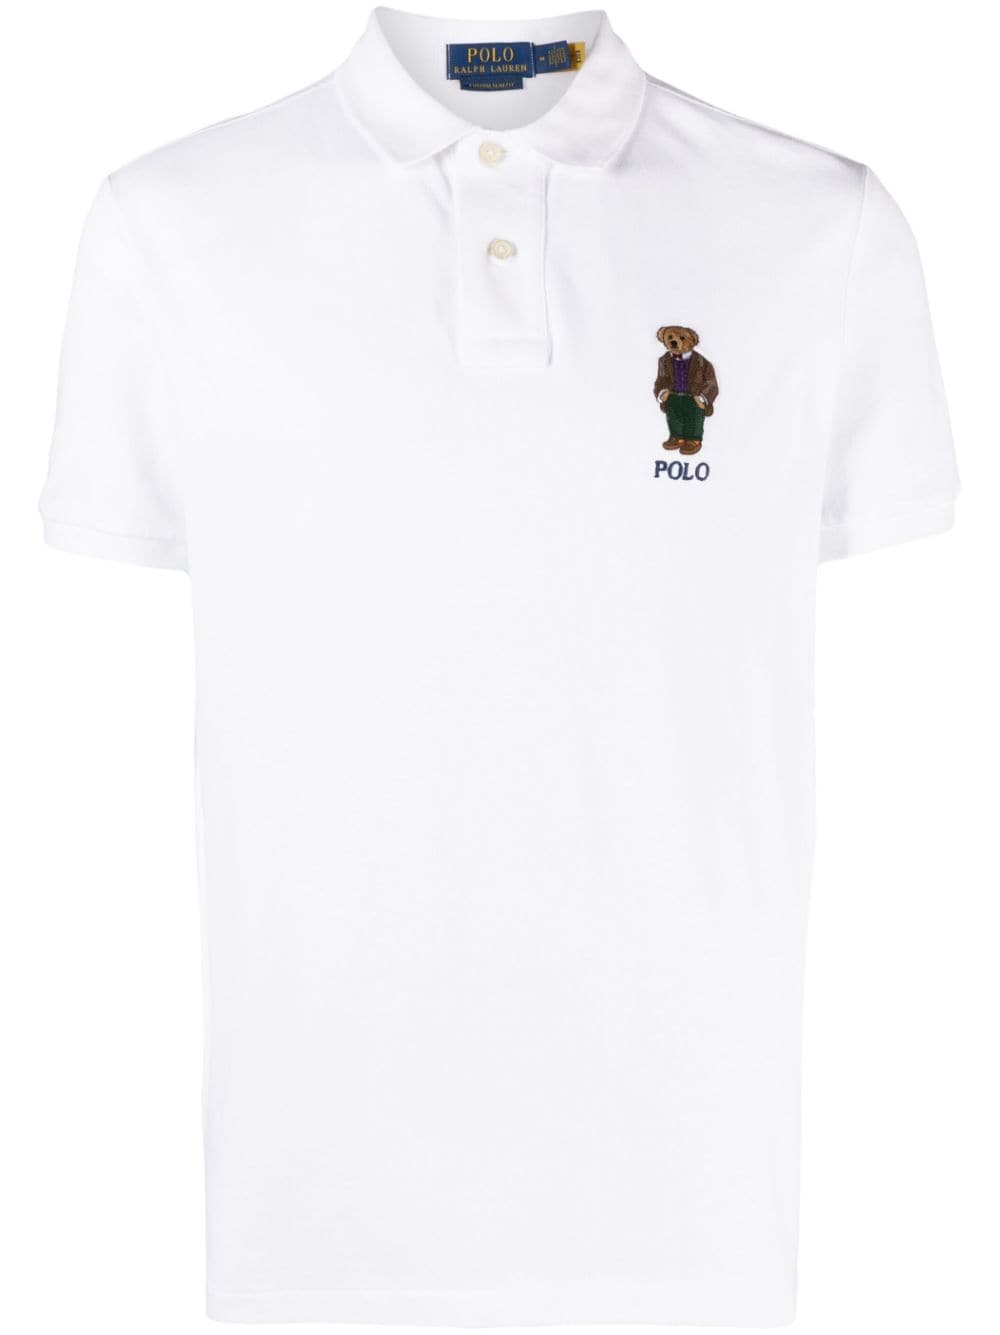 Image 1 of Polo Ralph Lauren playera tipo polo con motivo Polo Bear